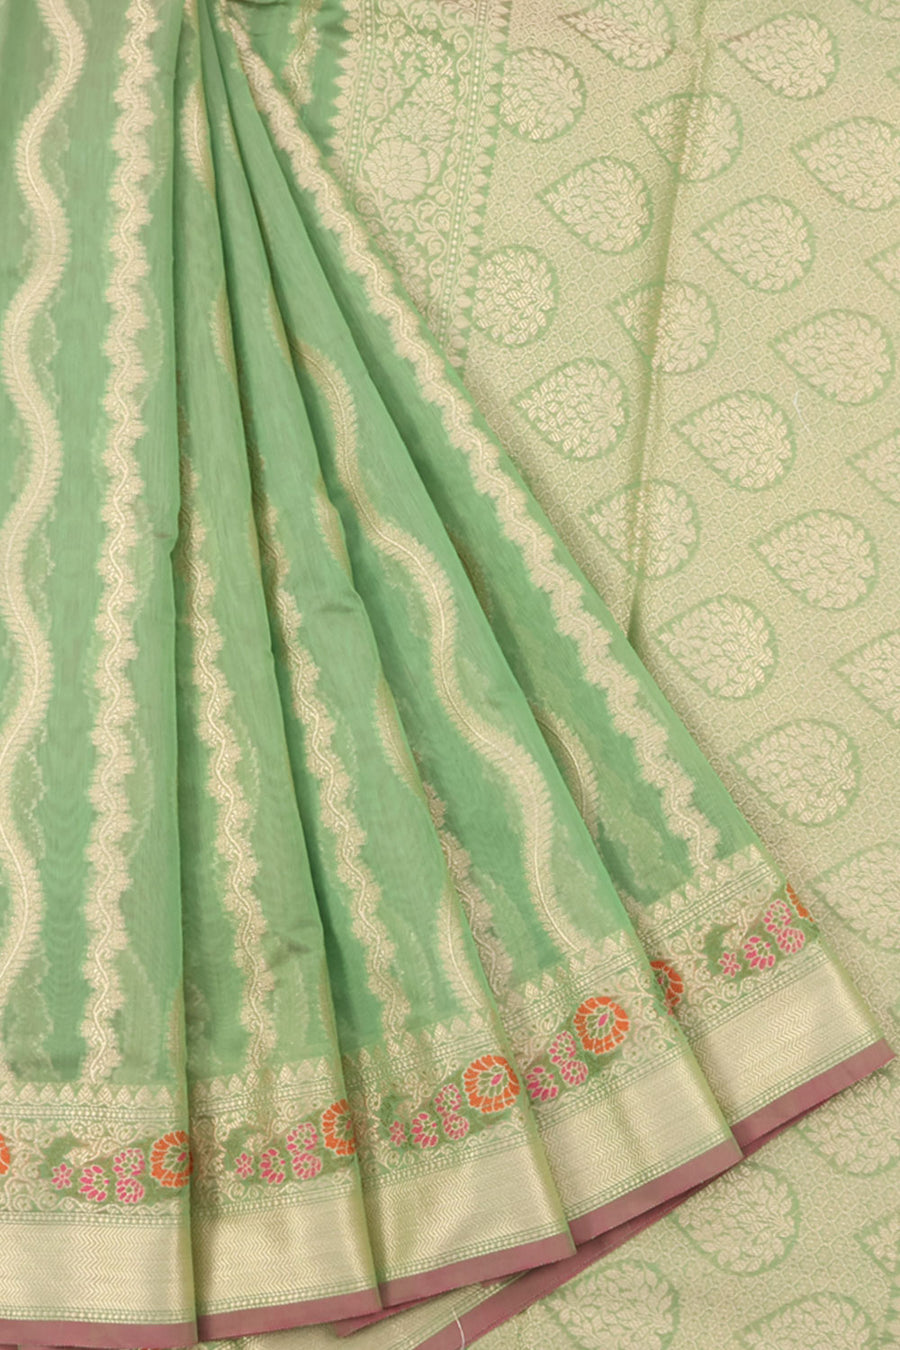 Banarasi Cotton Saree with Floral Motifs Design and Meenakari Jangla Border